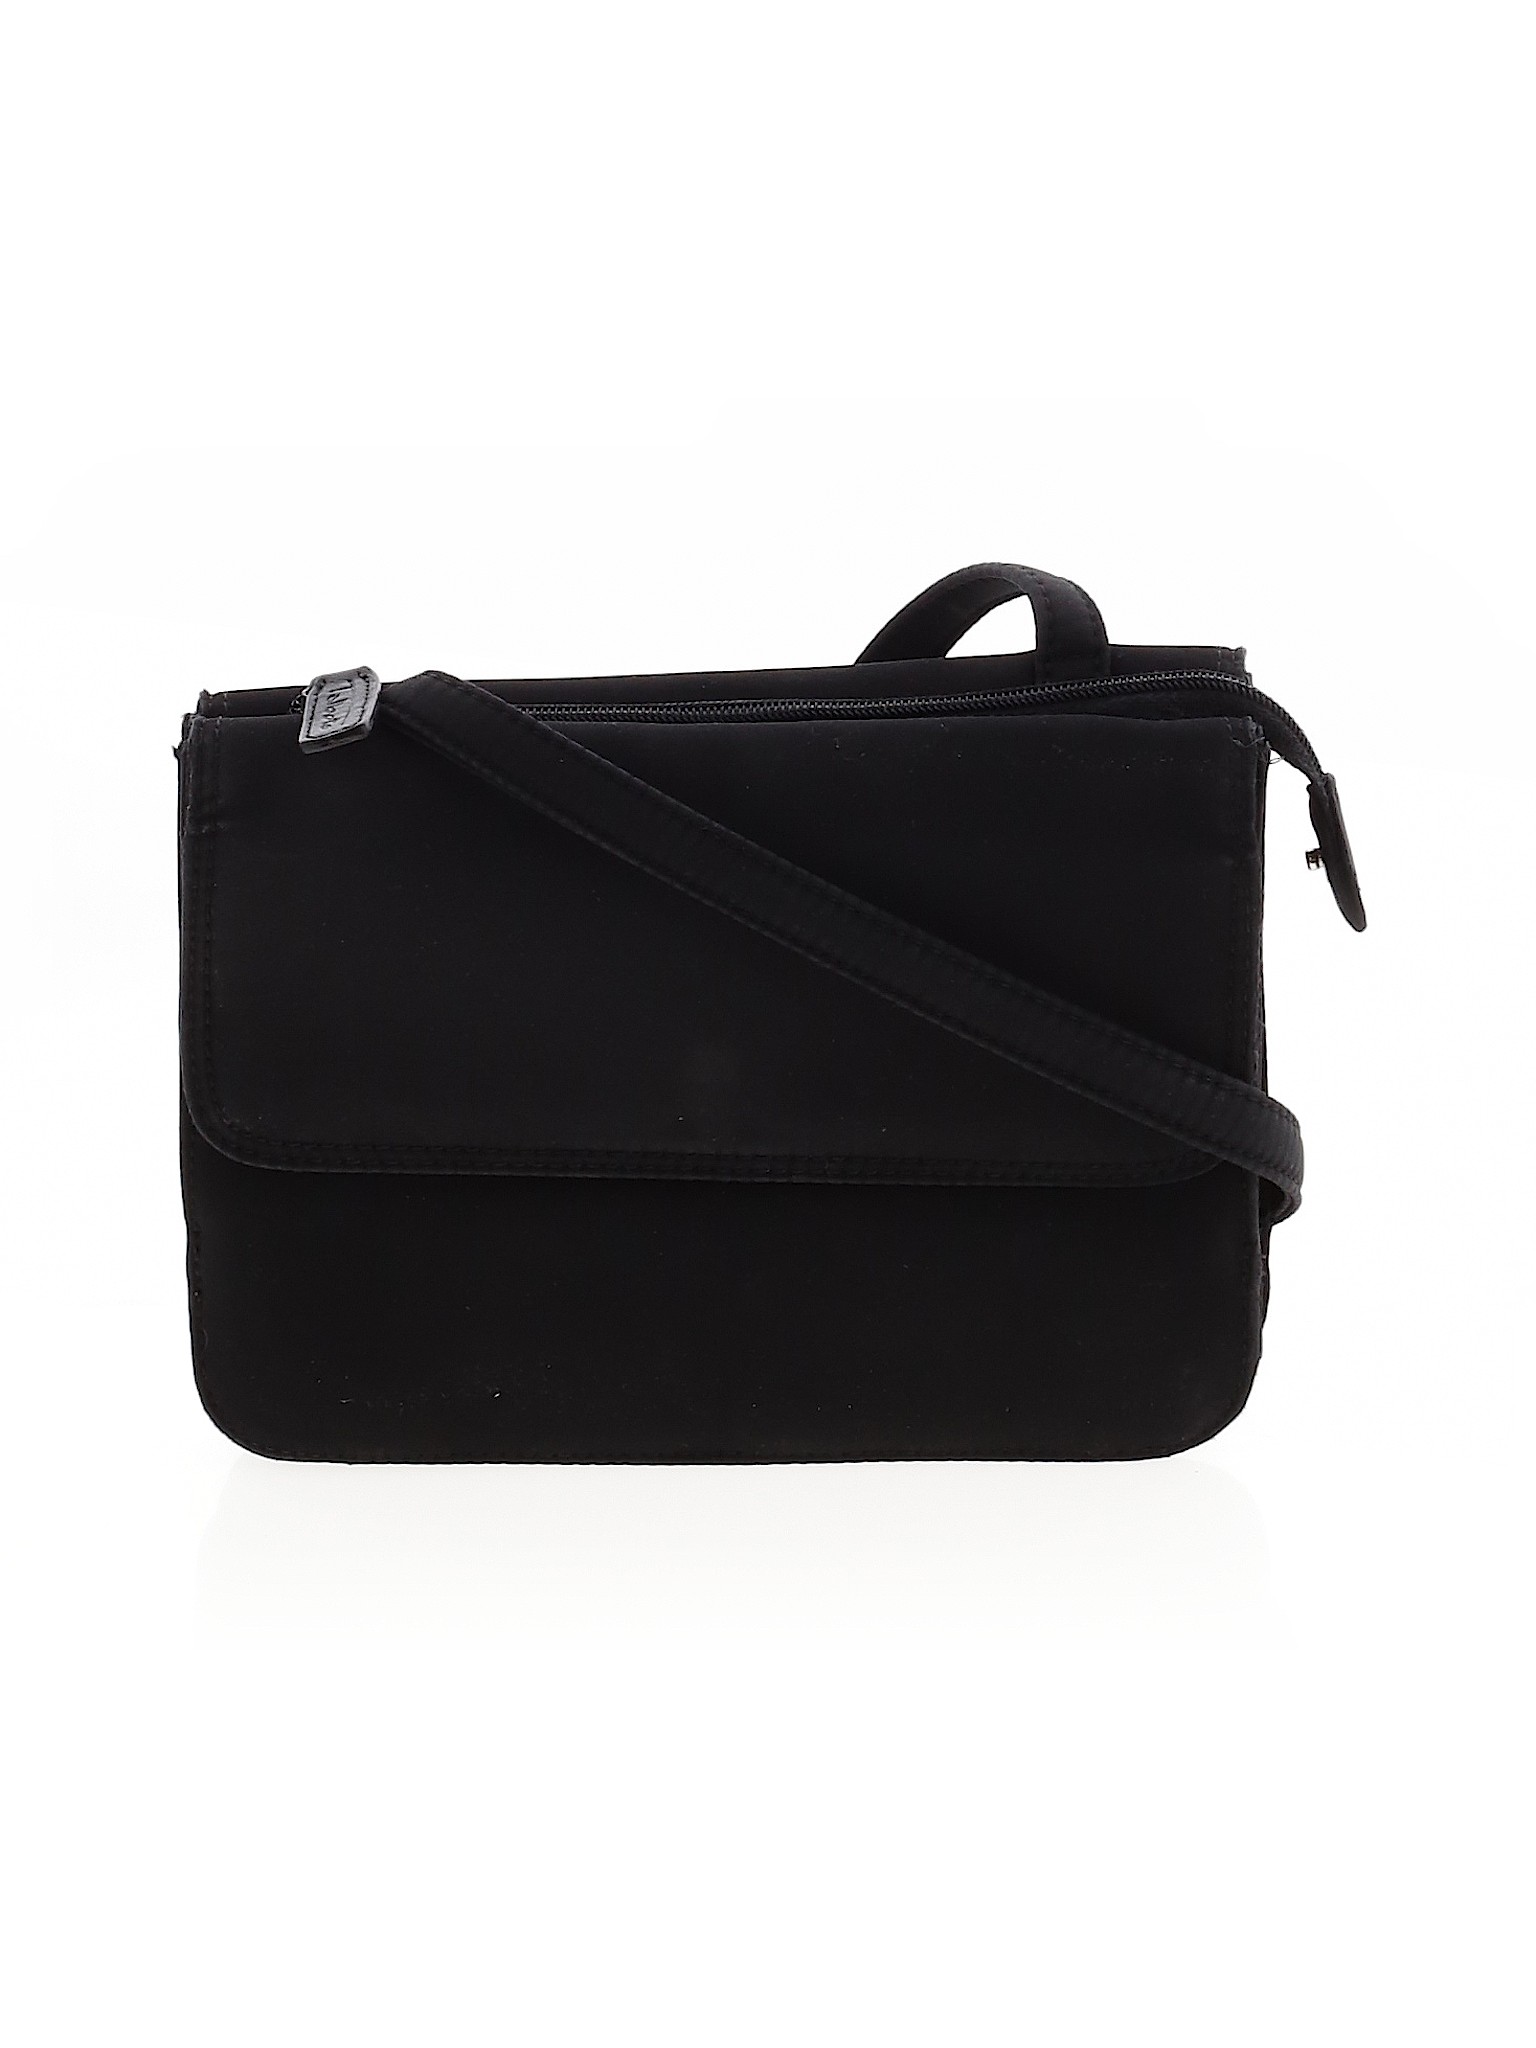 Talbots Women Black Crossbody Bag One Size | eBay